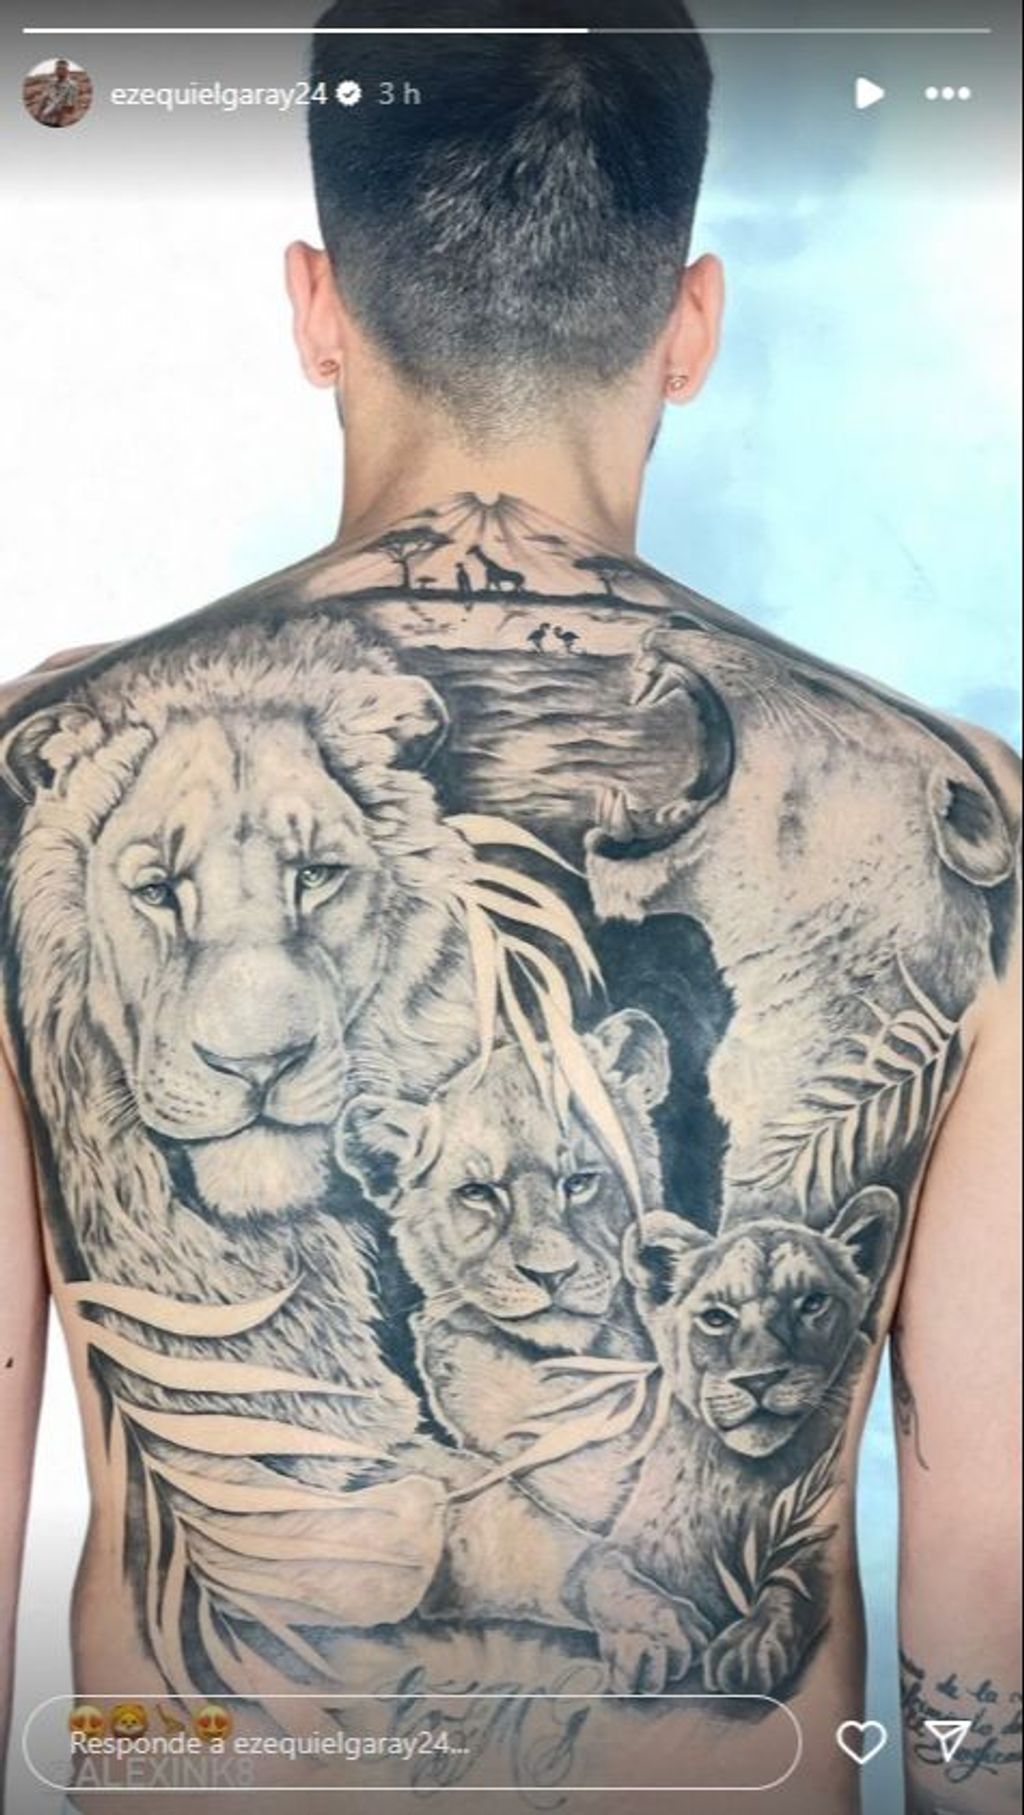 El impresionante nuevo tatuaje de Ezequiel Garay: una familia de leones